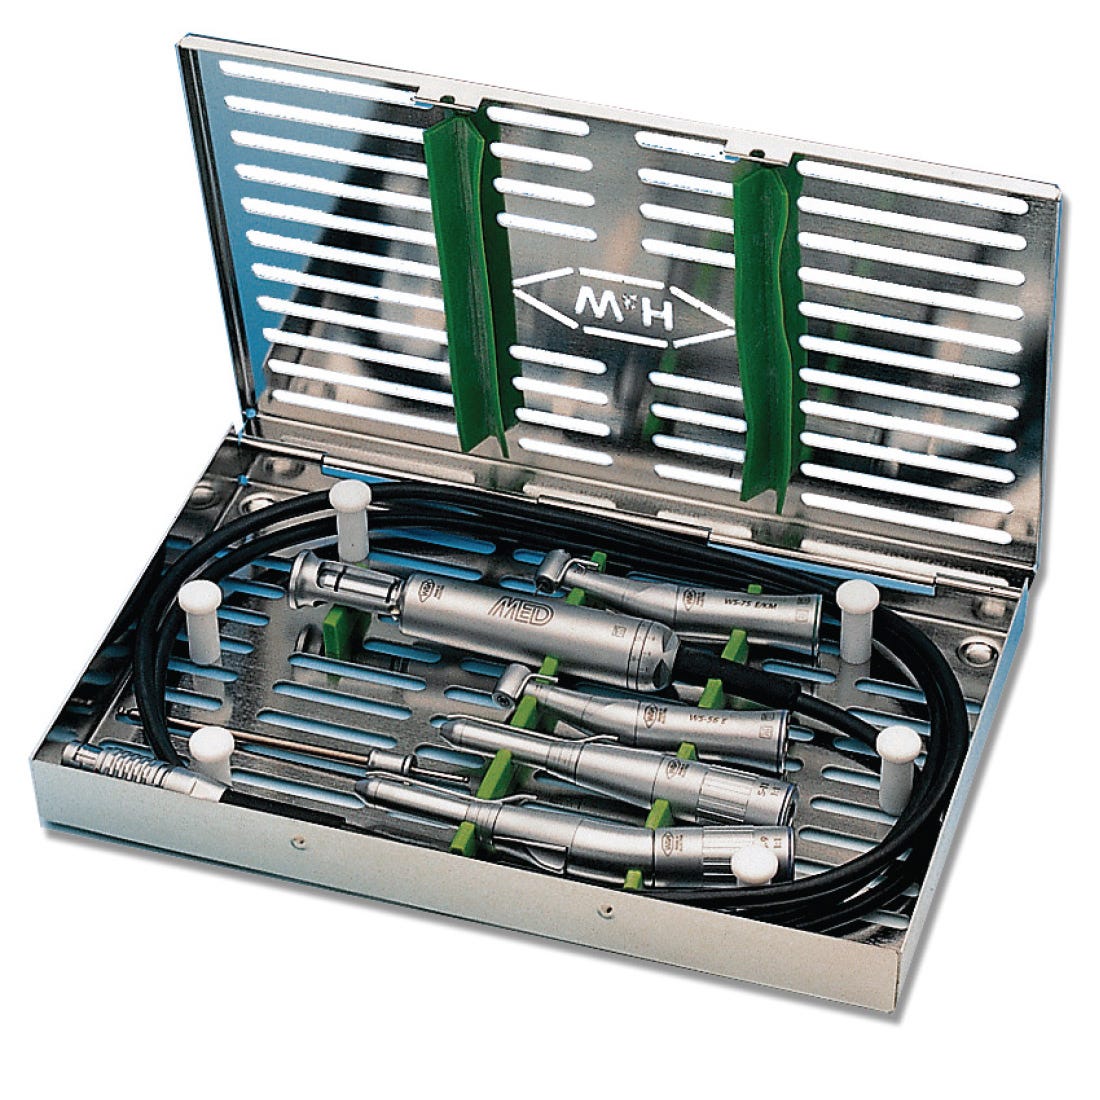 W&H Sterilizing Box For W&H Motors & Handpieces  27.5cm X 17.25cm X 2.75cm